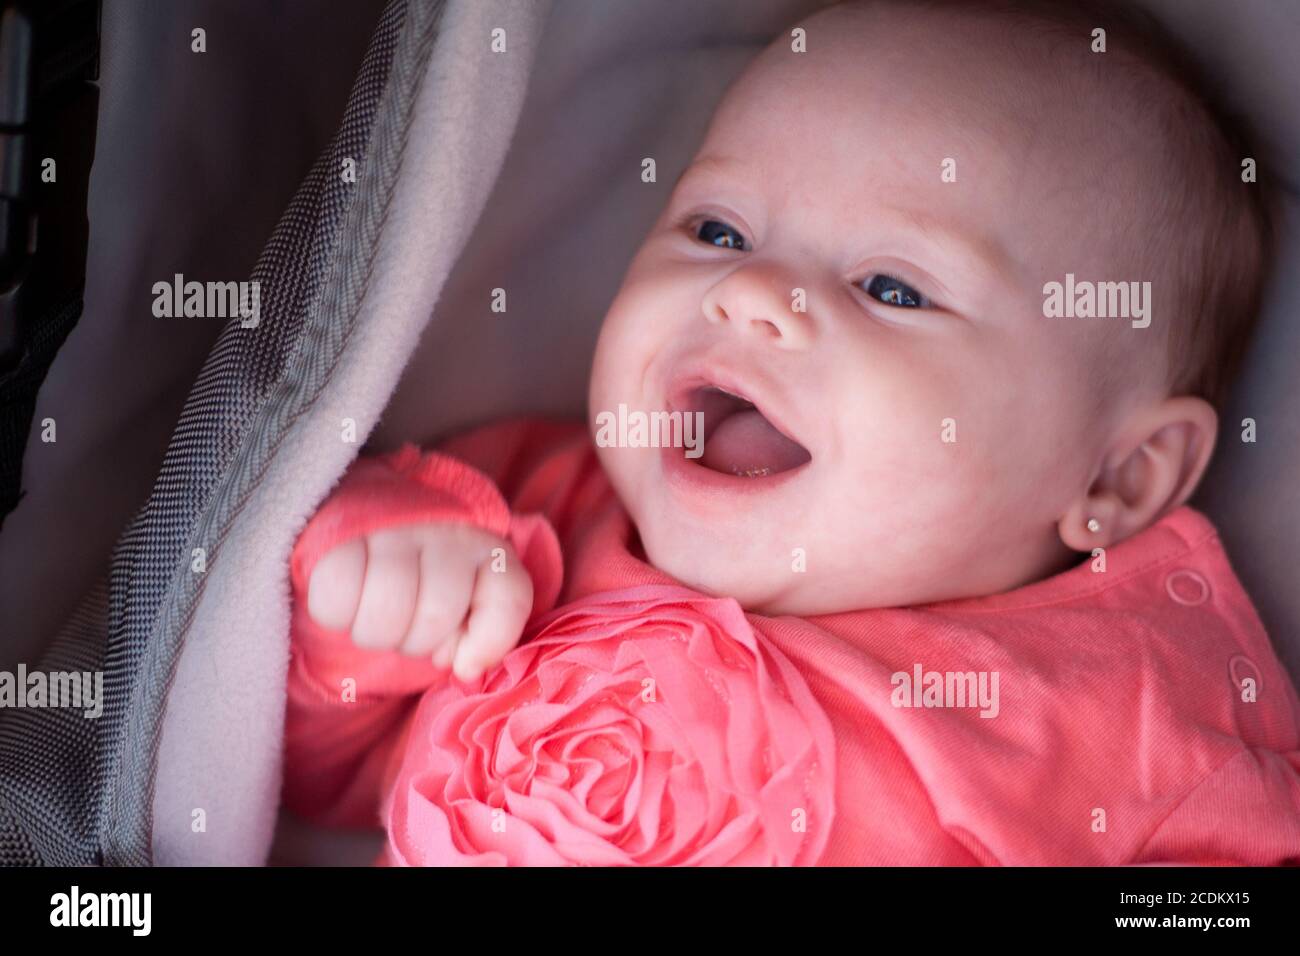 Bébé souriant dans le pram Banque D'Images